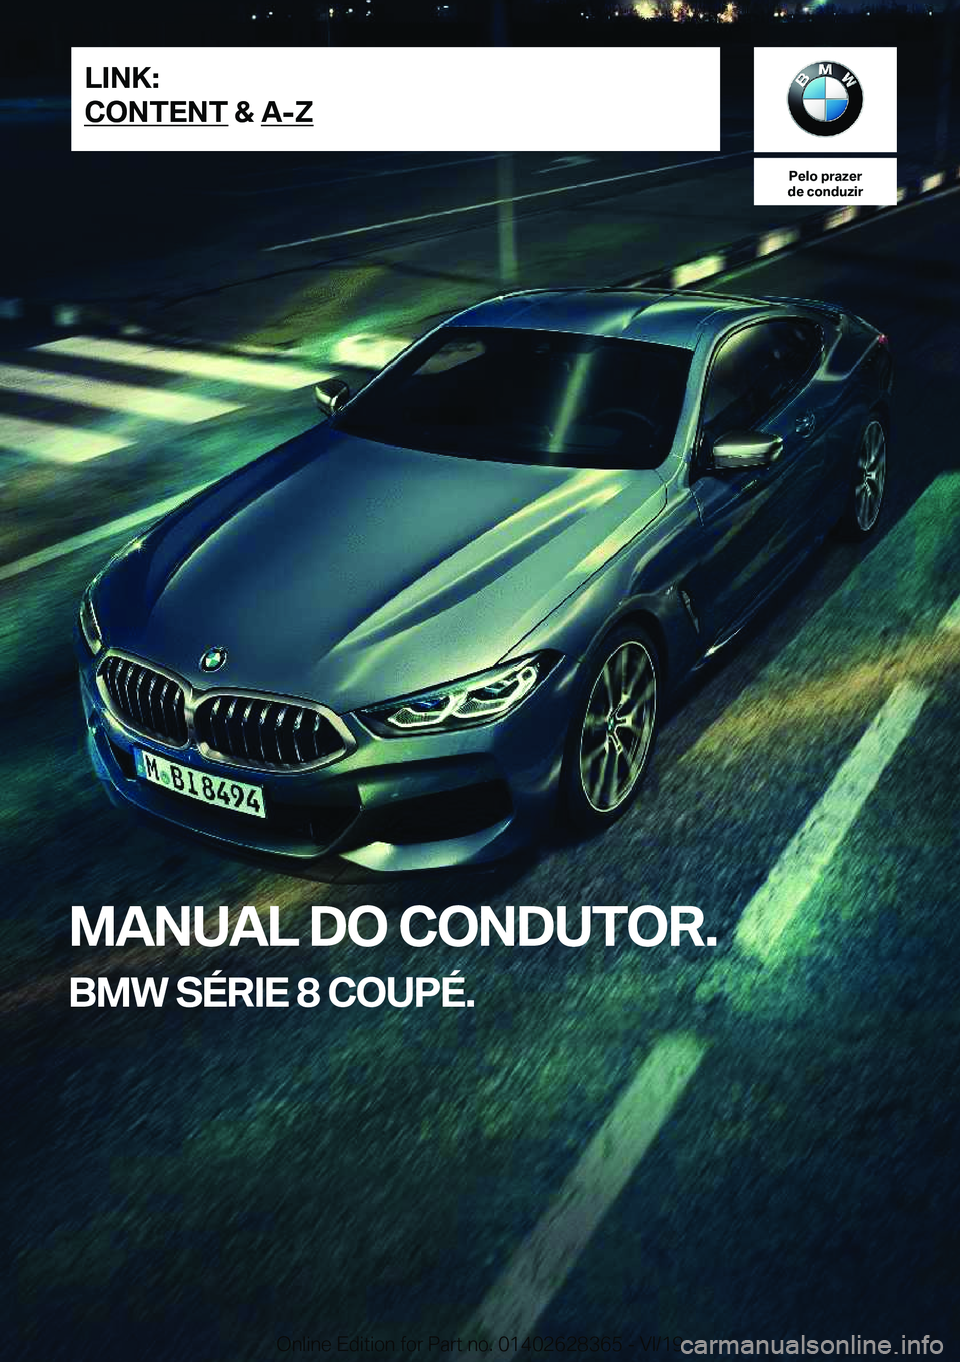 BMW 8 SERIES COUPE 2020  Manual do condutor (in Portuguese) �P�e�l�o��p�r�a�z�e�r
�d�e��c�o�n�d�u�z�i�r
�M�A�N�U�A�L��D�O��C�O�N�D�U�T�O�R�.
�B�M�W��S�É�R�I�E��8��C�O�U�P�É�.�L�I�N�K�:
�C�O�N�T�E�N�T��&��A�-�Z�O�n�l�i�n�e��E�d�i�t�i�o�n��f�o�r��P